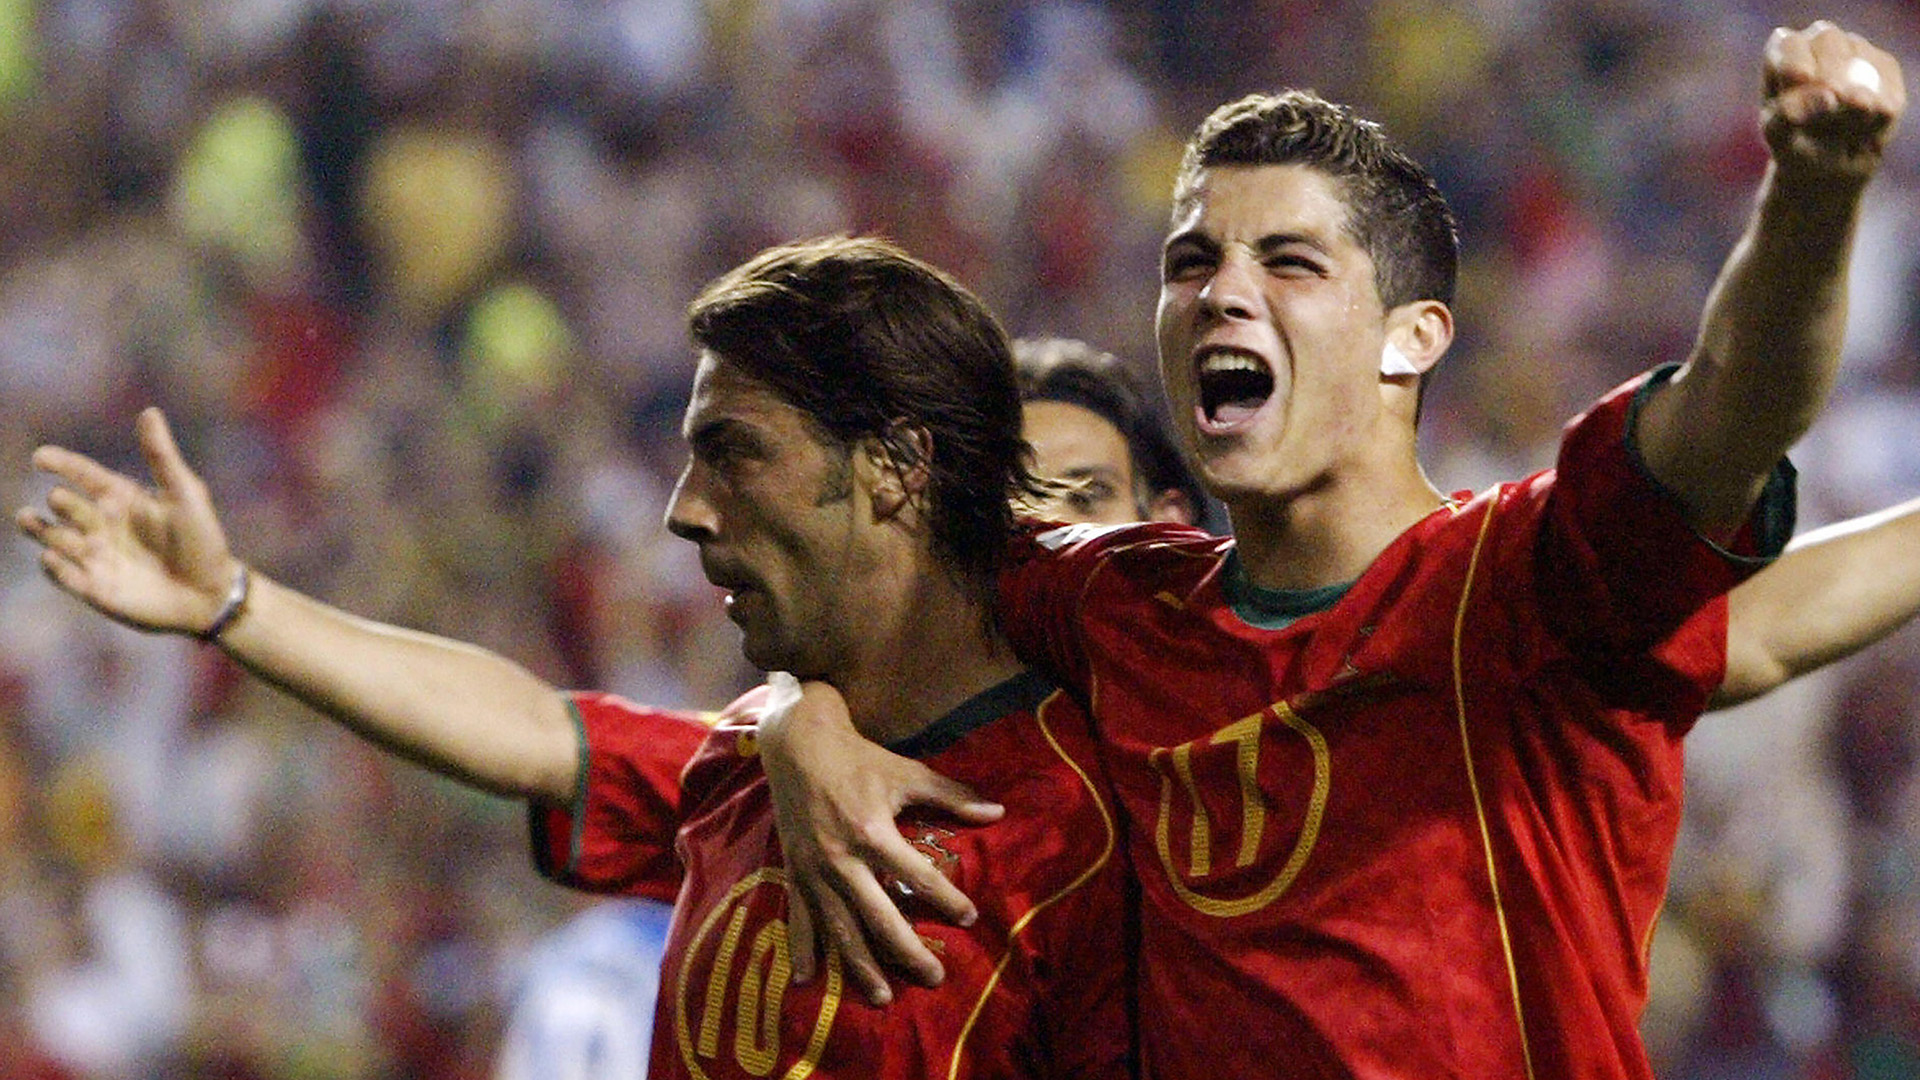 Masalah Terbesar Portugal Bukanlah Cristiano Ronaldo Goalcom